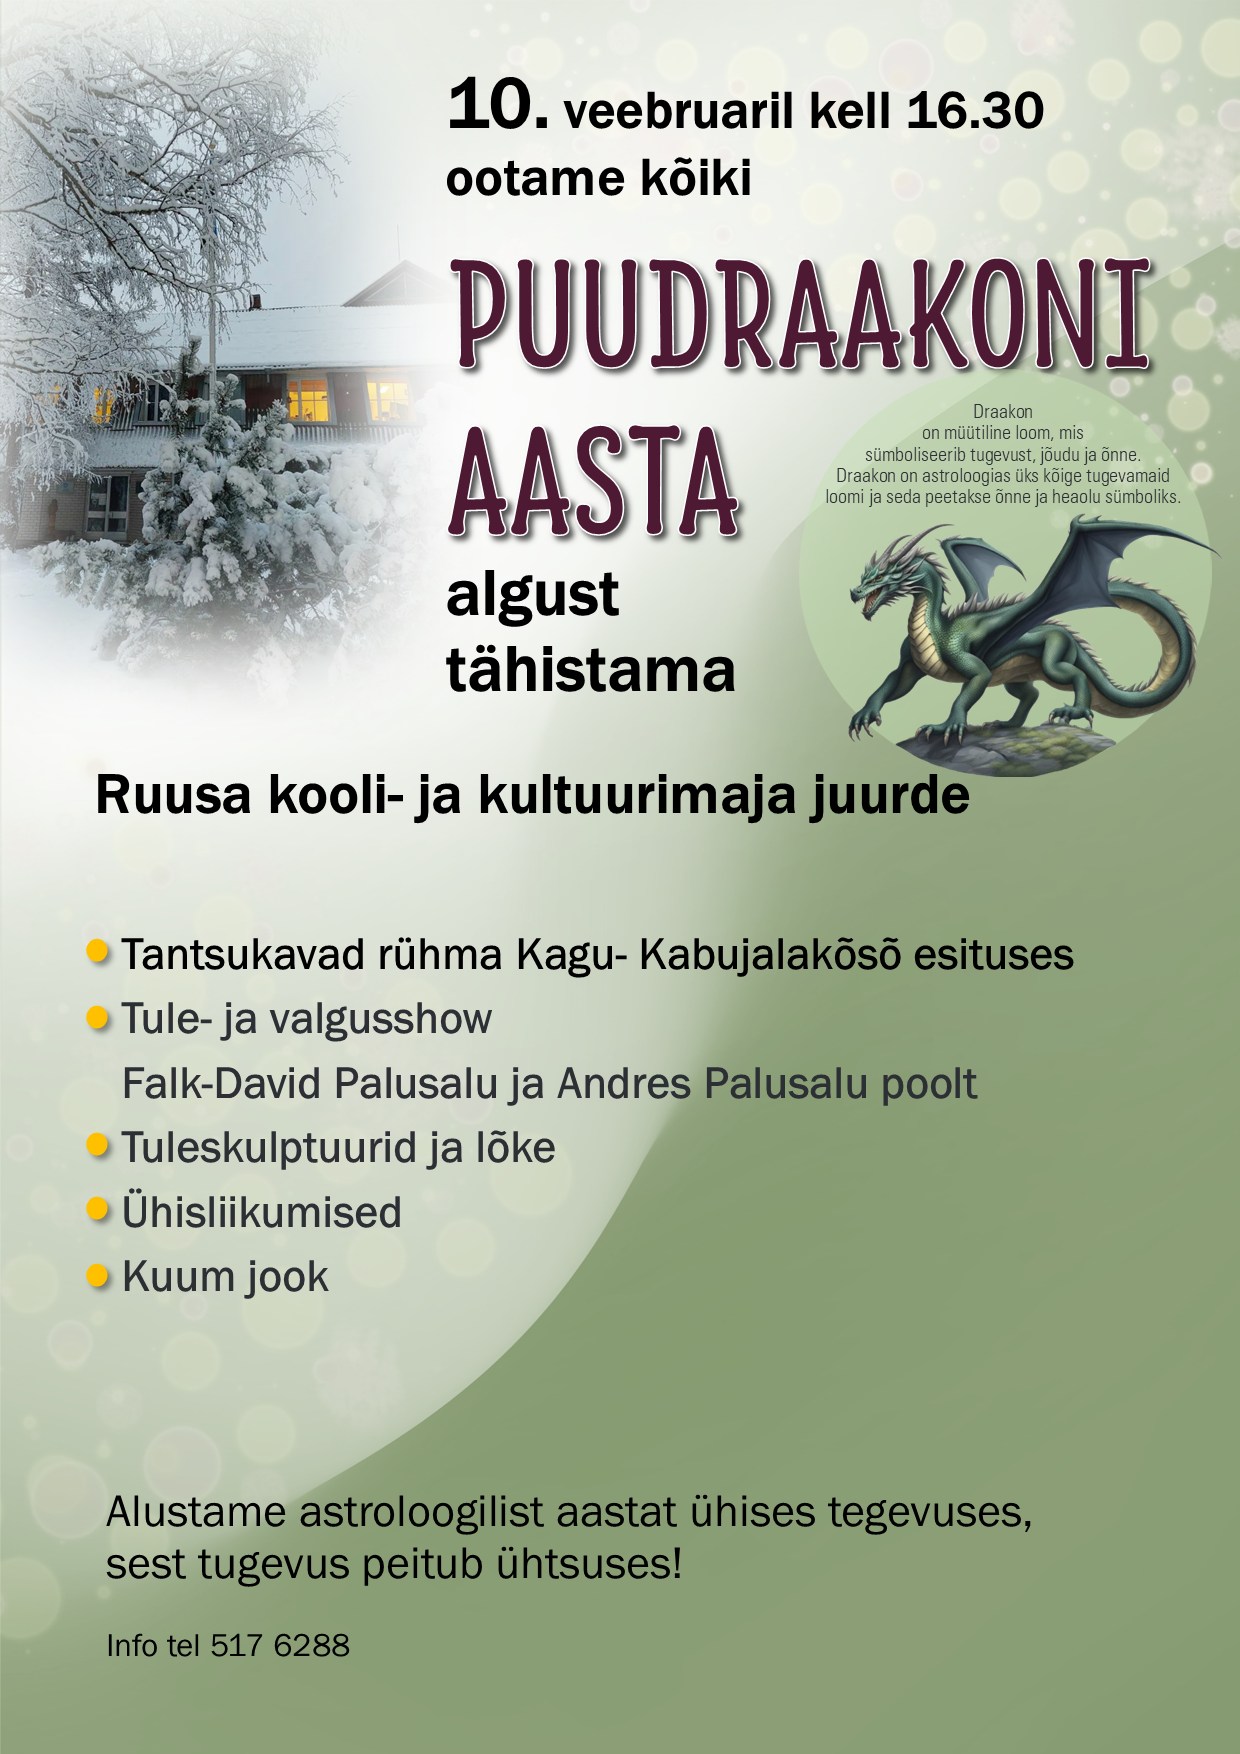 Rohelise Puudraakoni aasta algus @ Ruusa kultuurimaja/koolimaja juures | Ruusa | Põlva maakond | Eesti